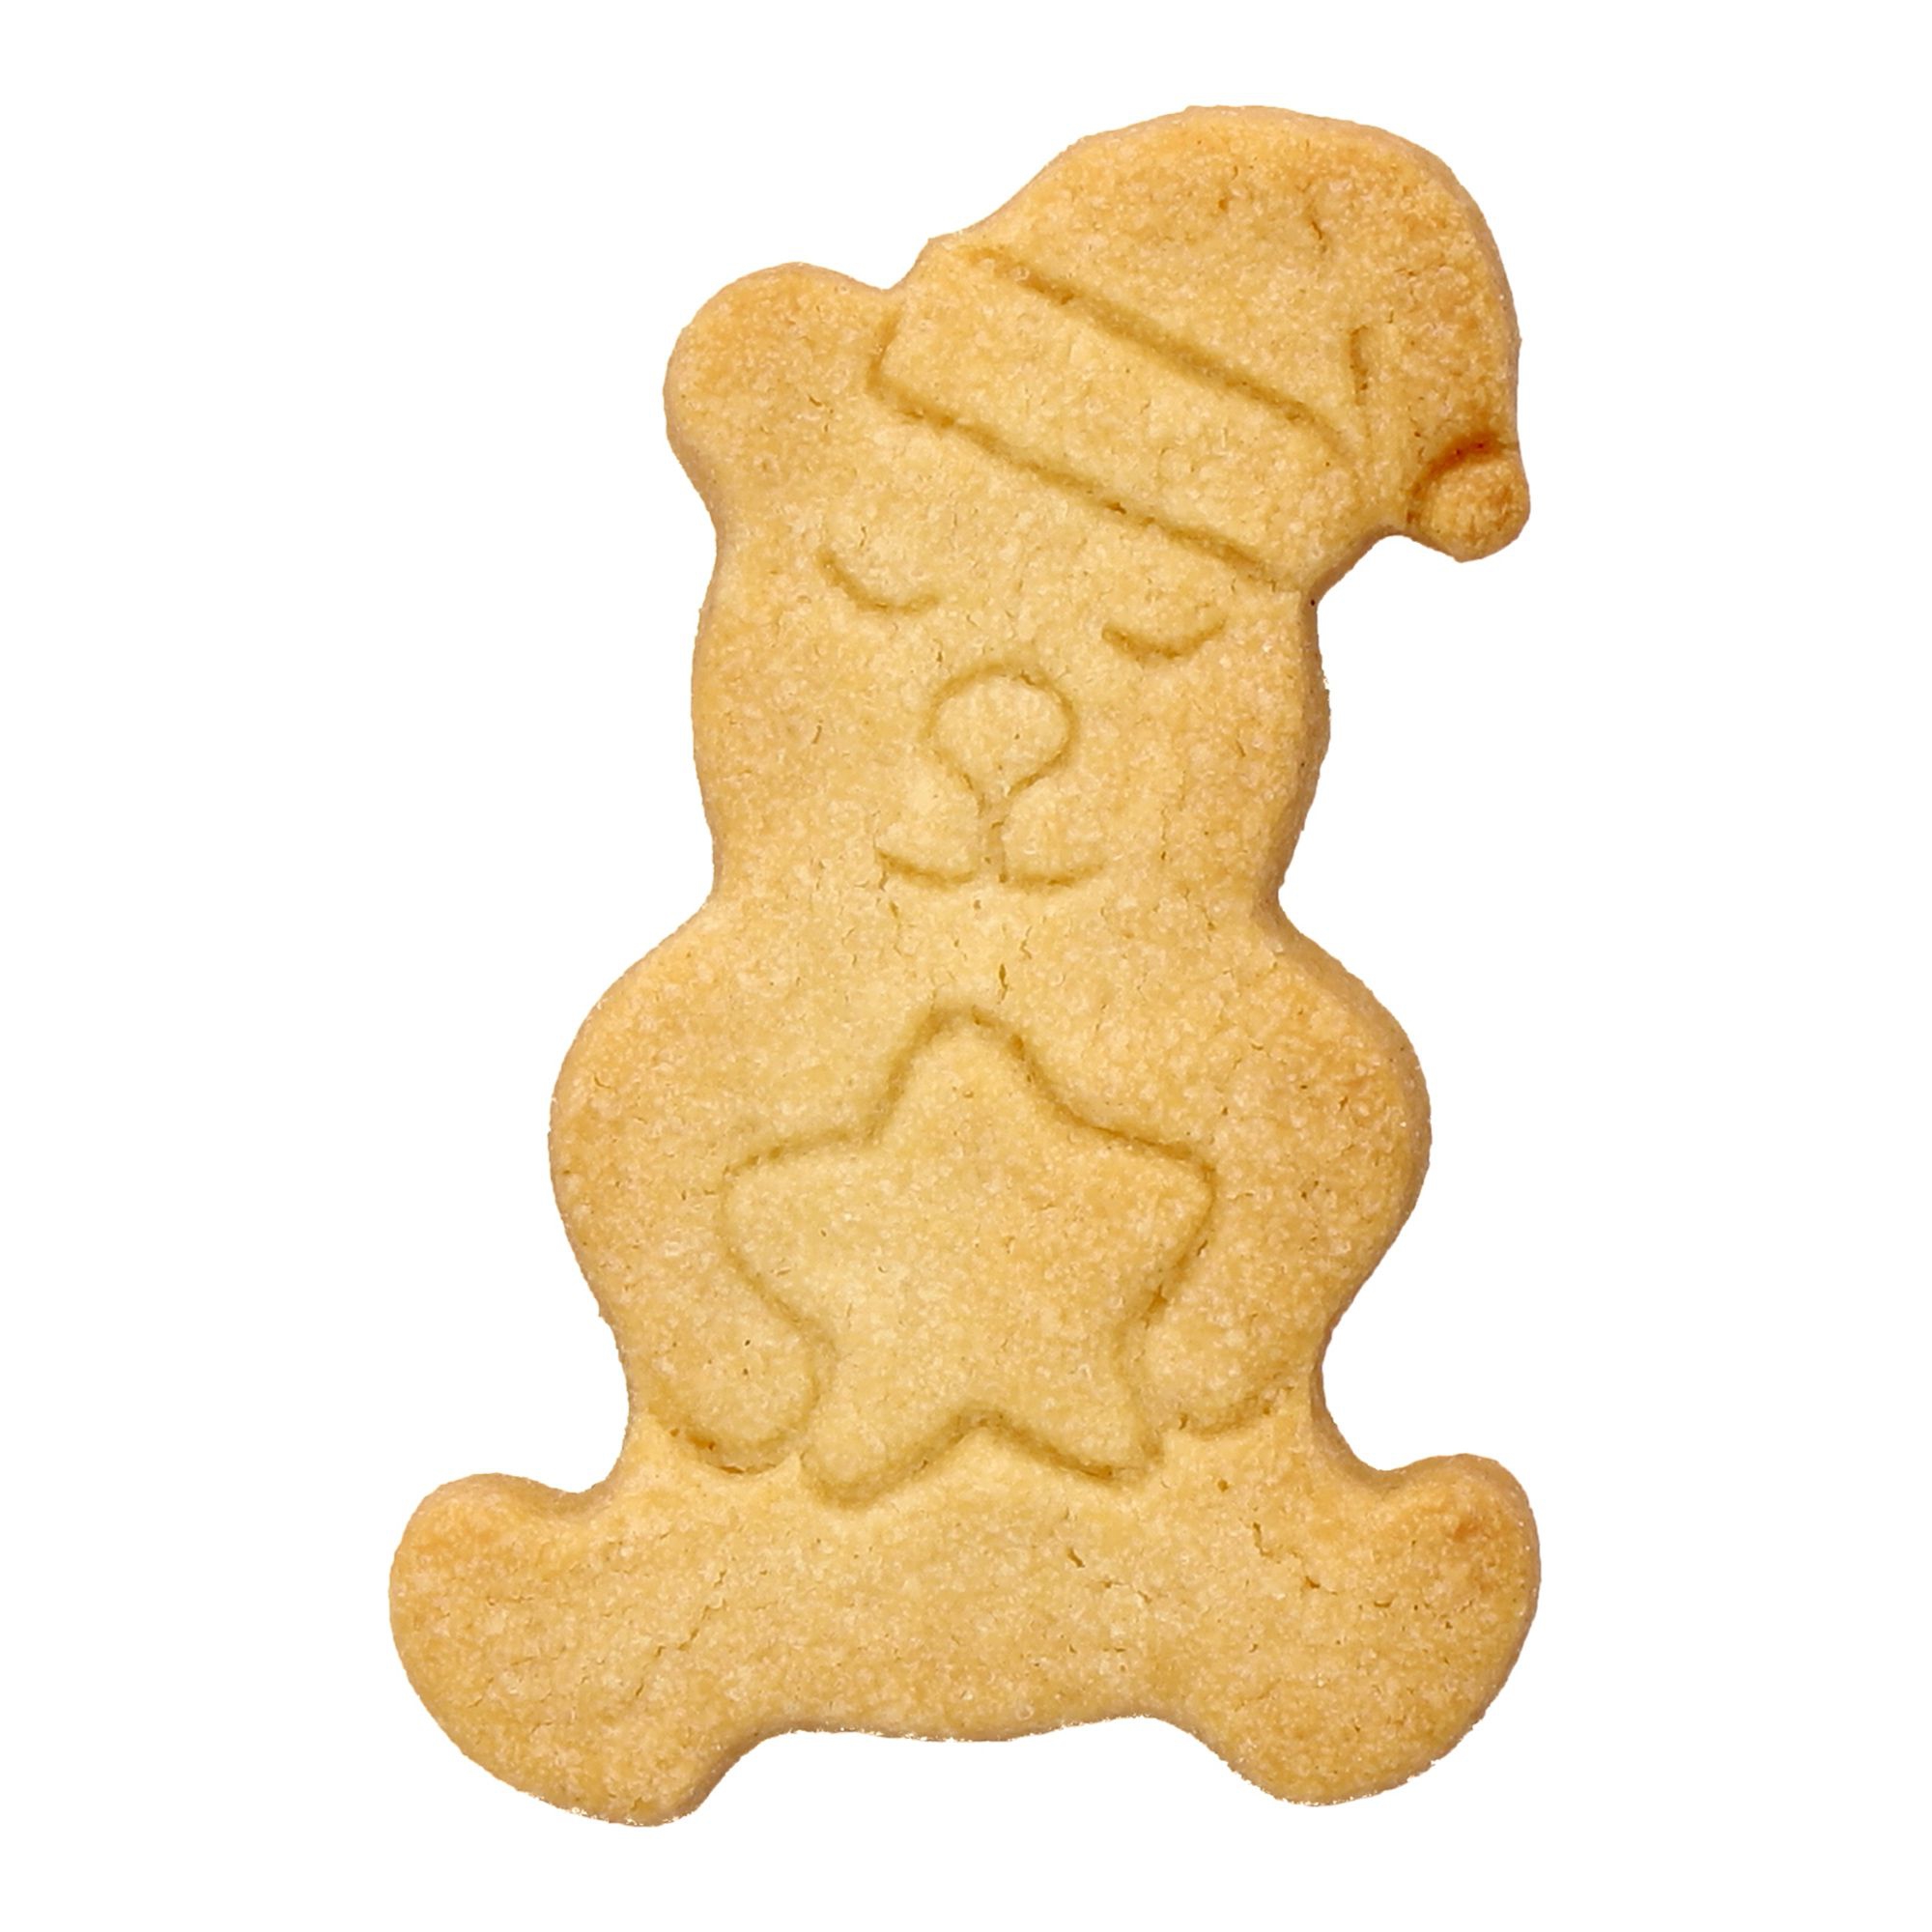 Birkmann - Cookie cutter - Christmas teddy bear with star - 7 cm